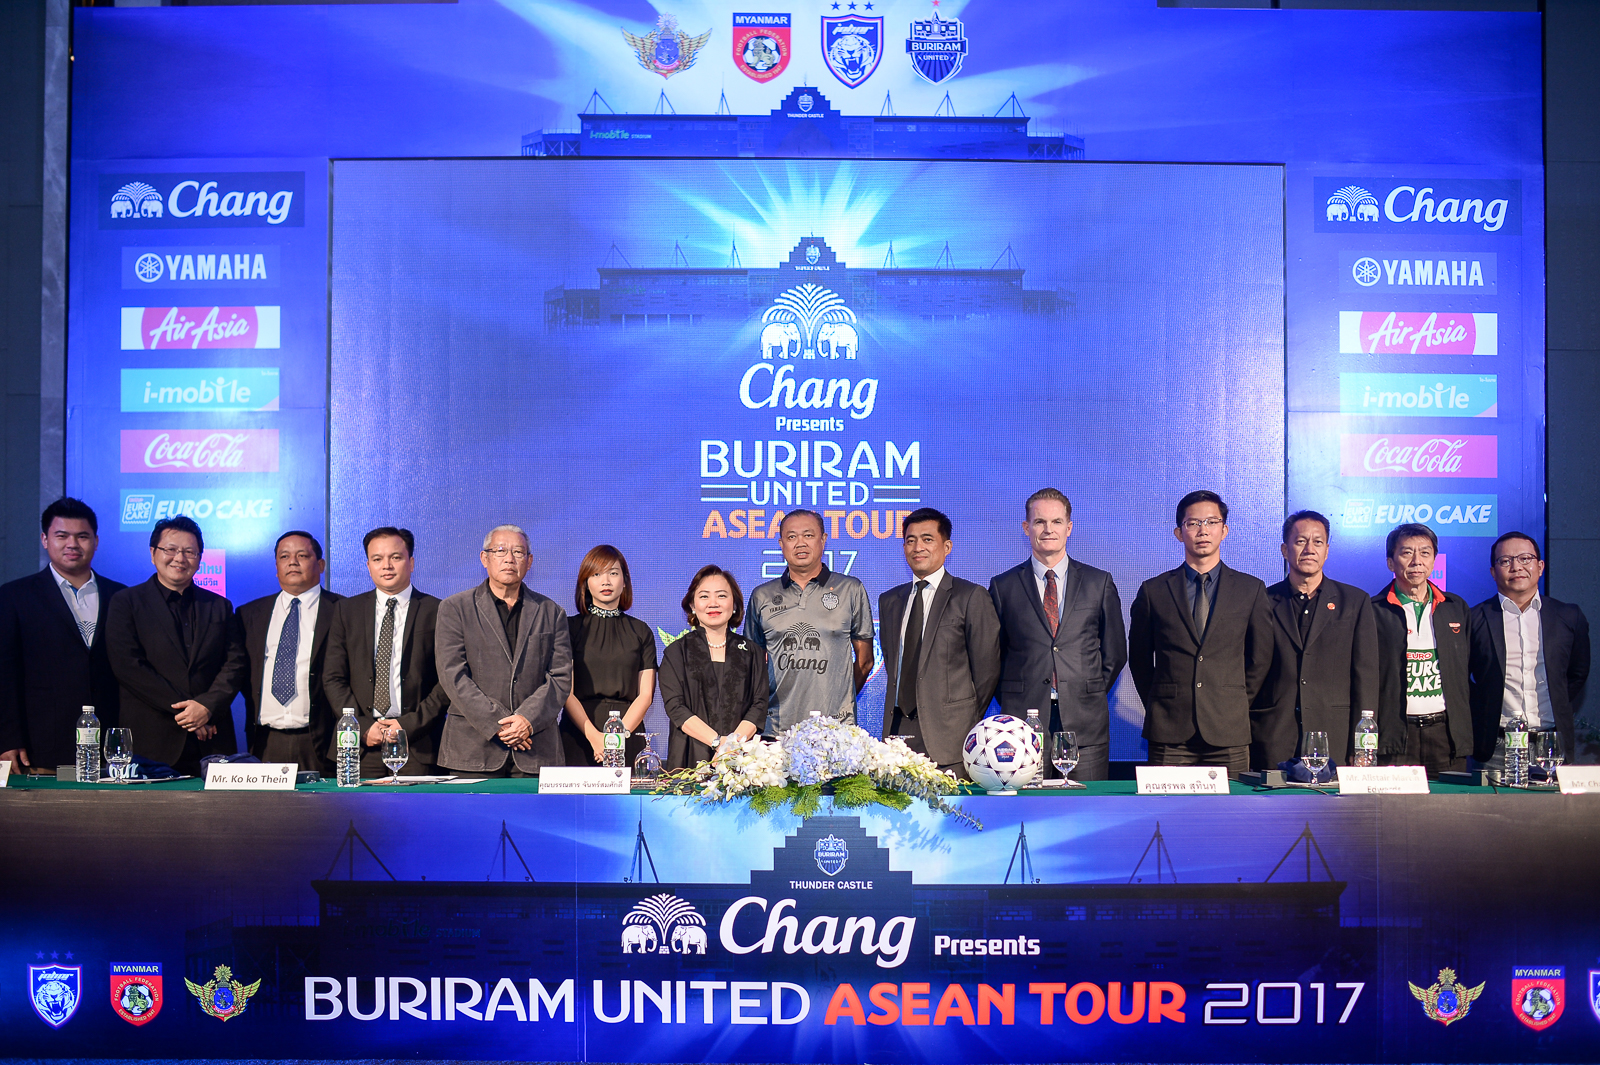 ยามาฮ่า ร่วมสนับสนุนฟุตบอลรายการพิเศษ “ช้าง บุรีรัมย์ ยูไนเต็ด อาเซียนทัวร์ 2017” กระชับมิตร 4 ทีม ดังอาเซียน